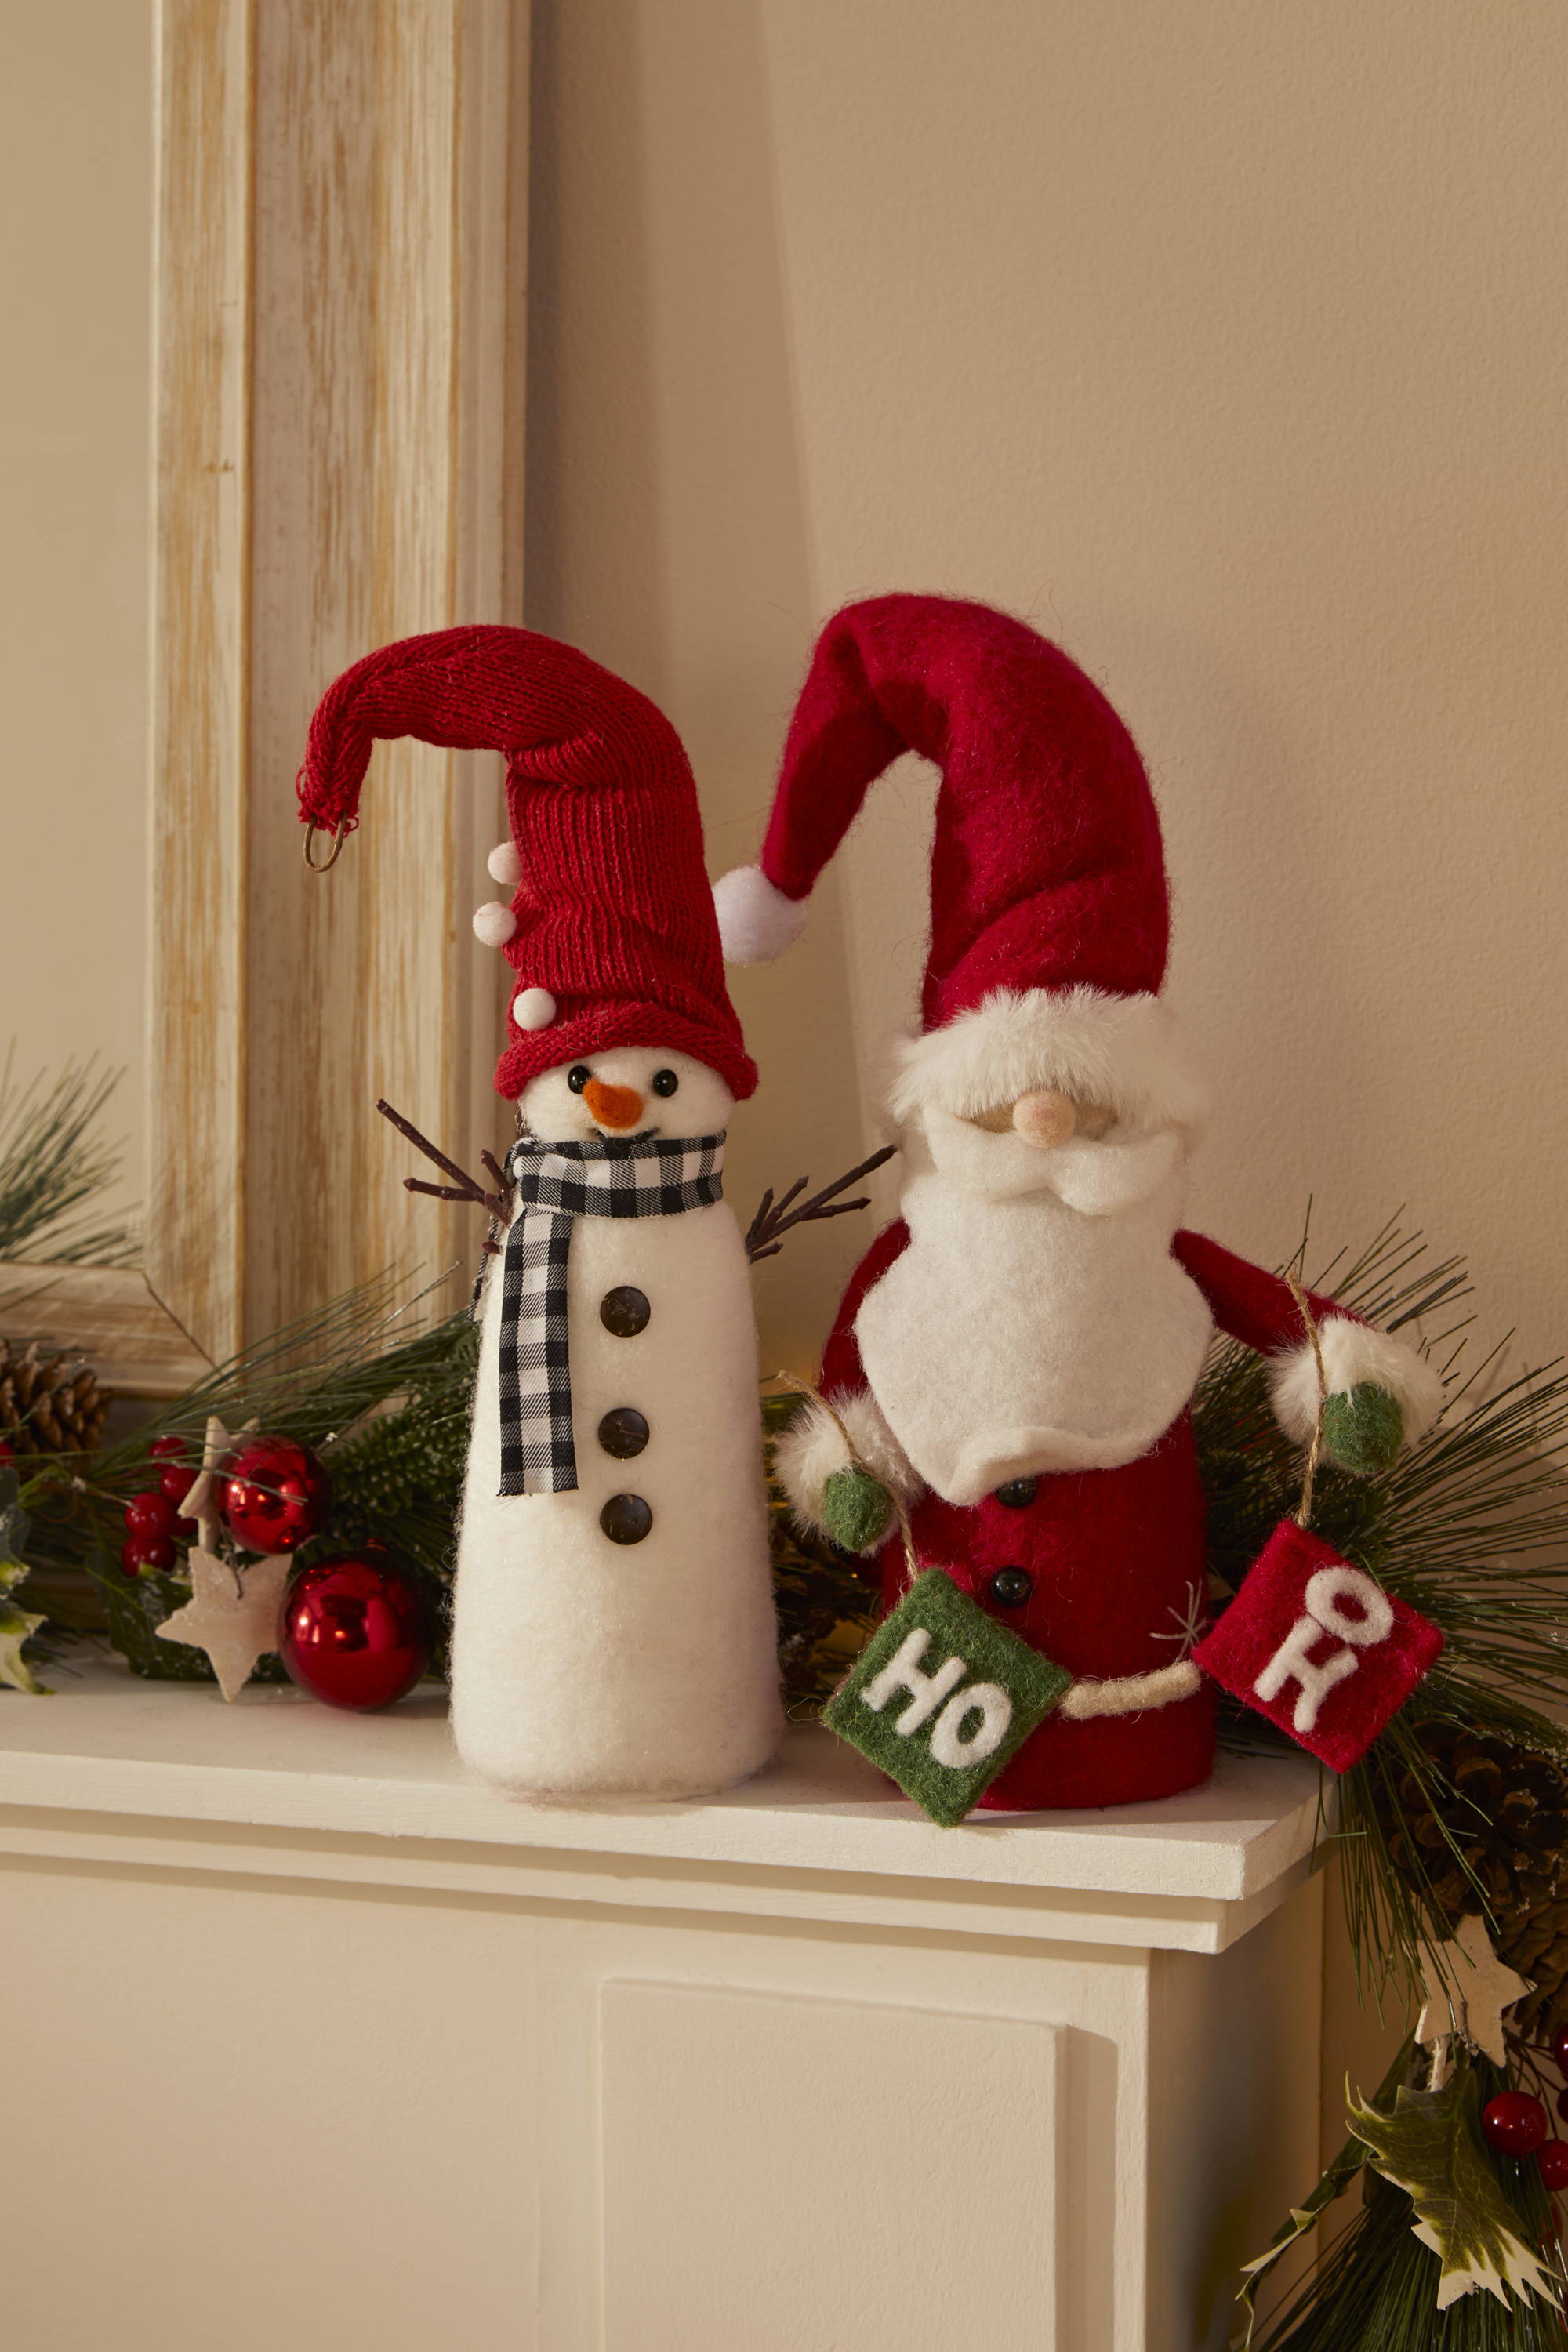 Wool snowman & Santa figures